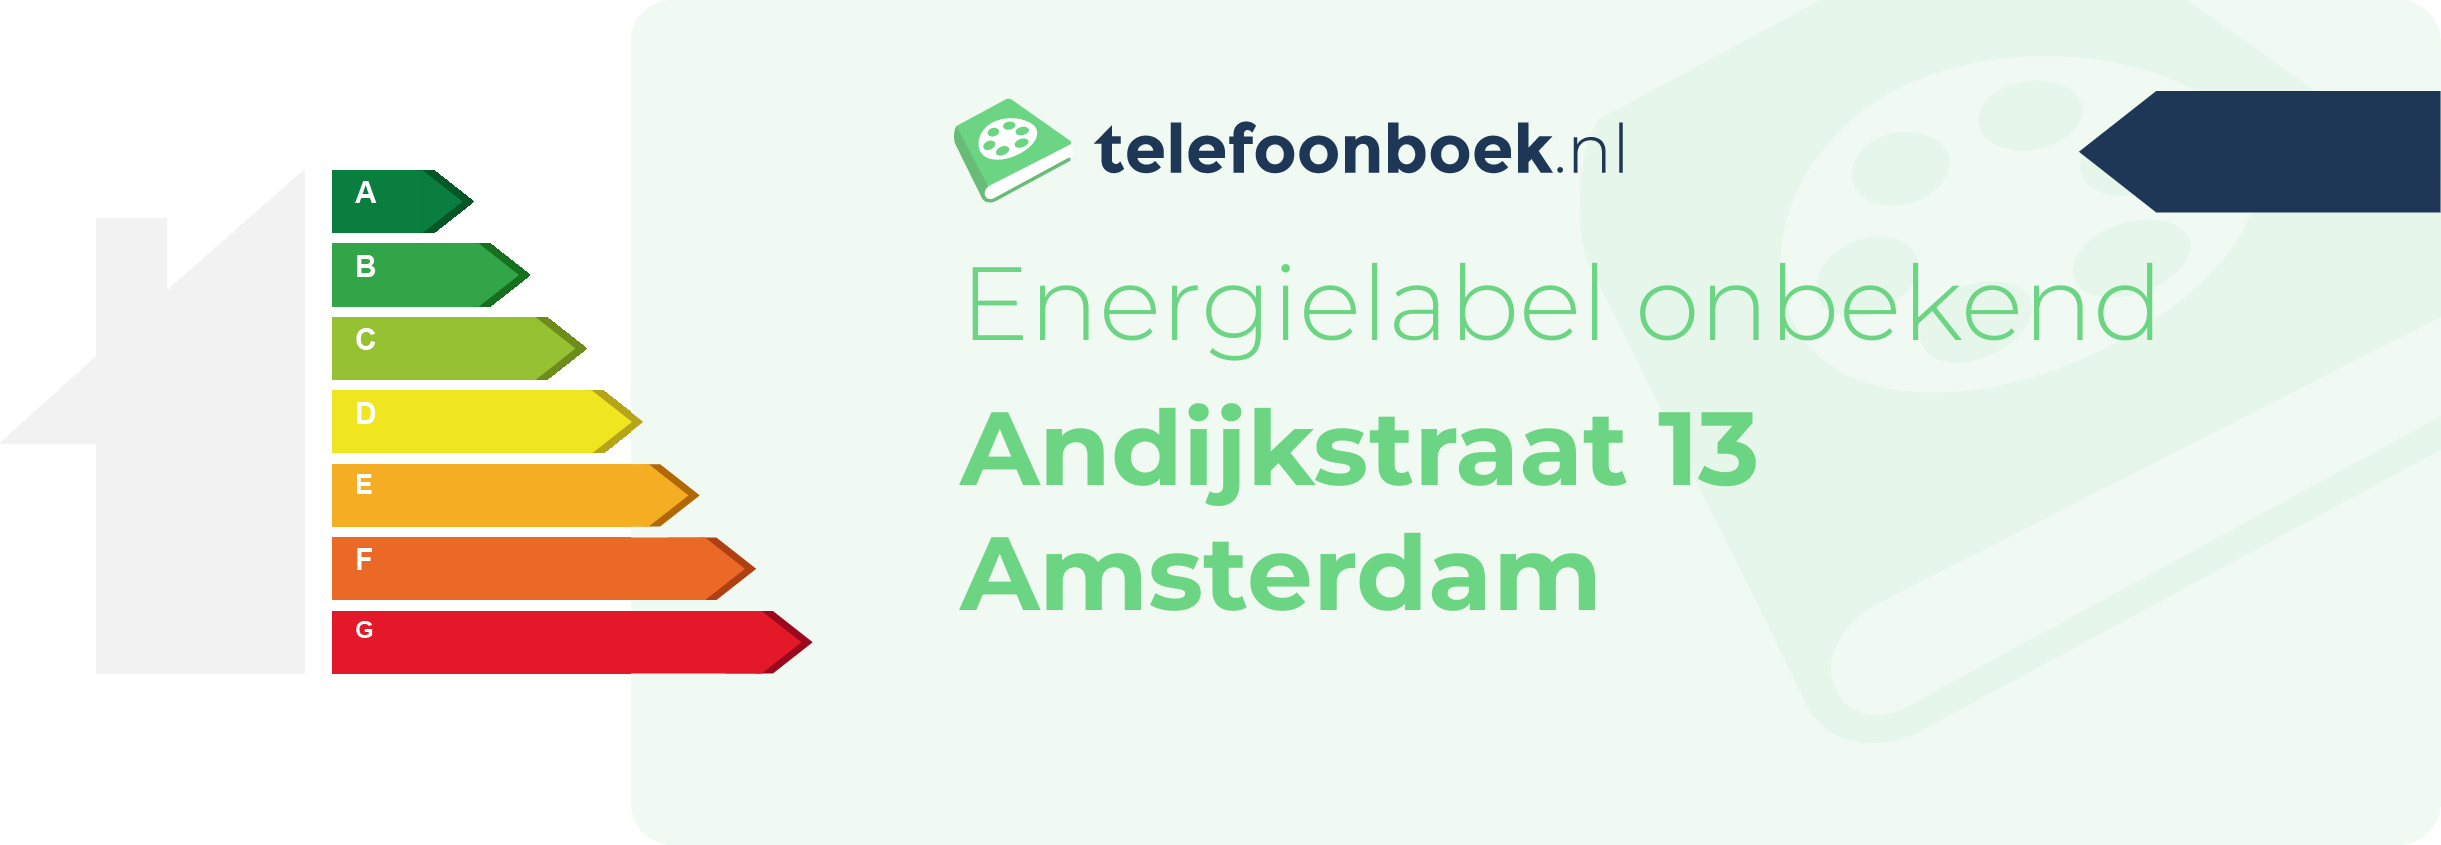 Energielabel Andijkstraat 13 Amsterdam